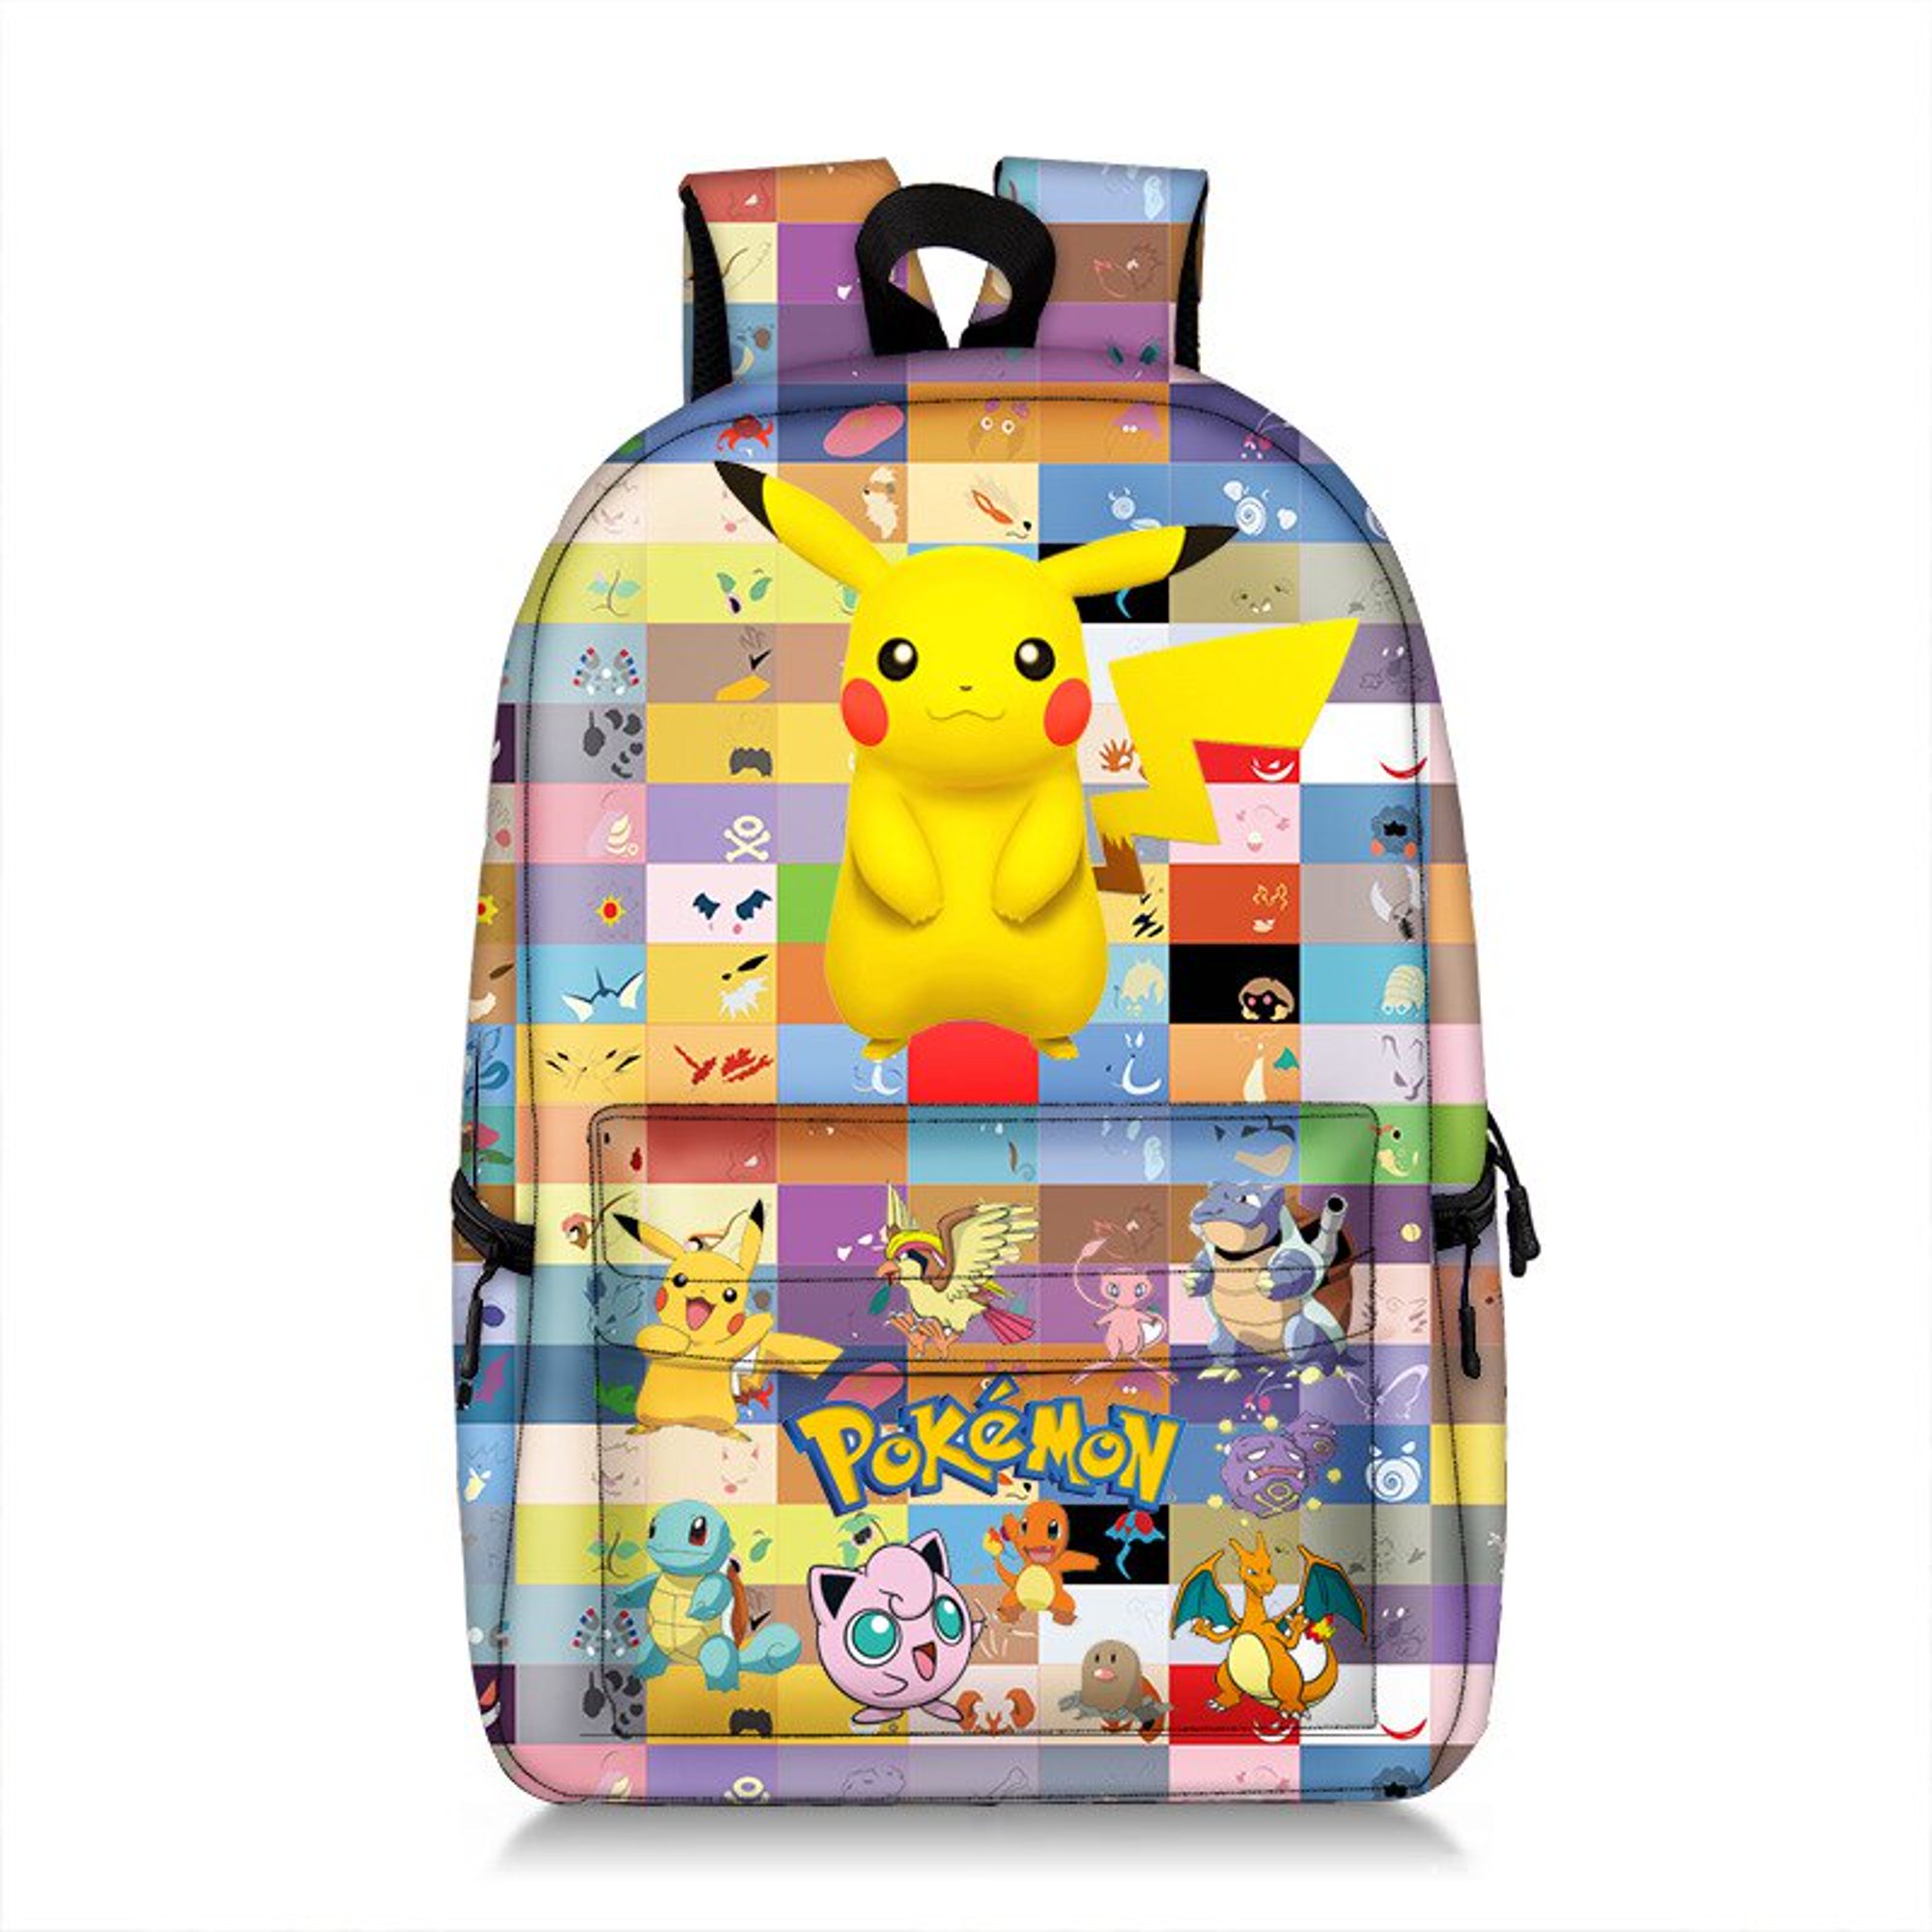 Casa Cristi - Mochila Pikachu hermosa y tierna para llevar tus elementos  más importantes a donde quieras! #pokémon #pokèmon #pokemon #pokemonfan  #pokemoncommunity #pikachu #pikachu⚡ #pikachulover